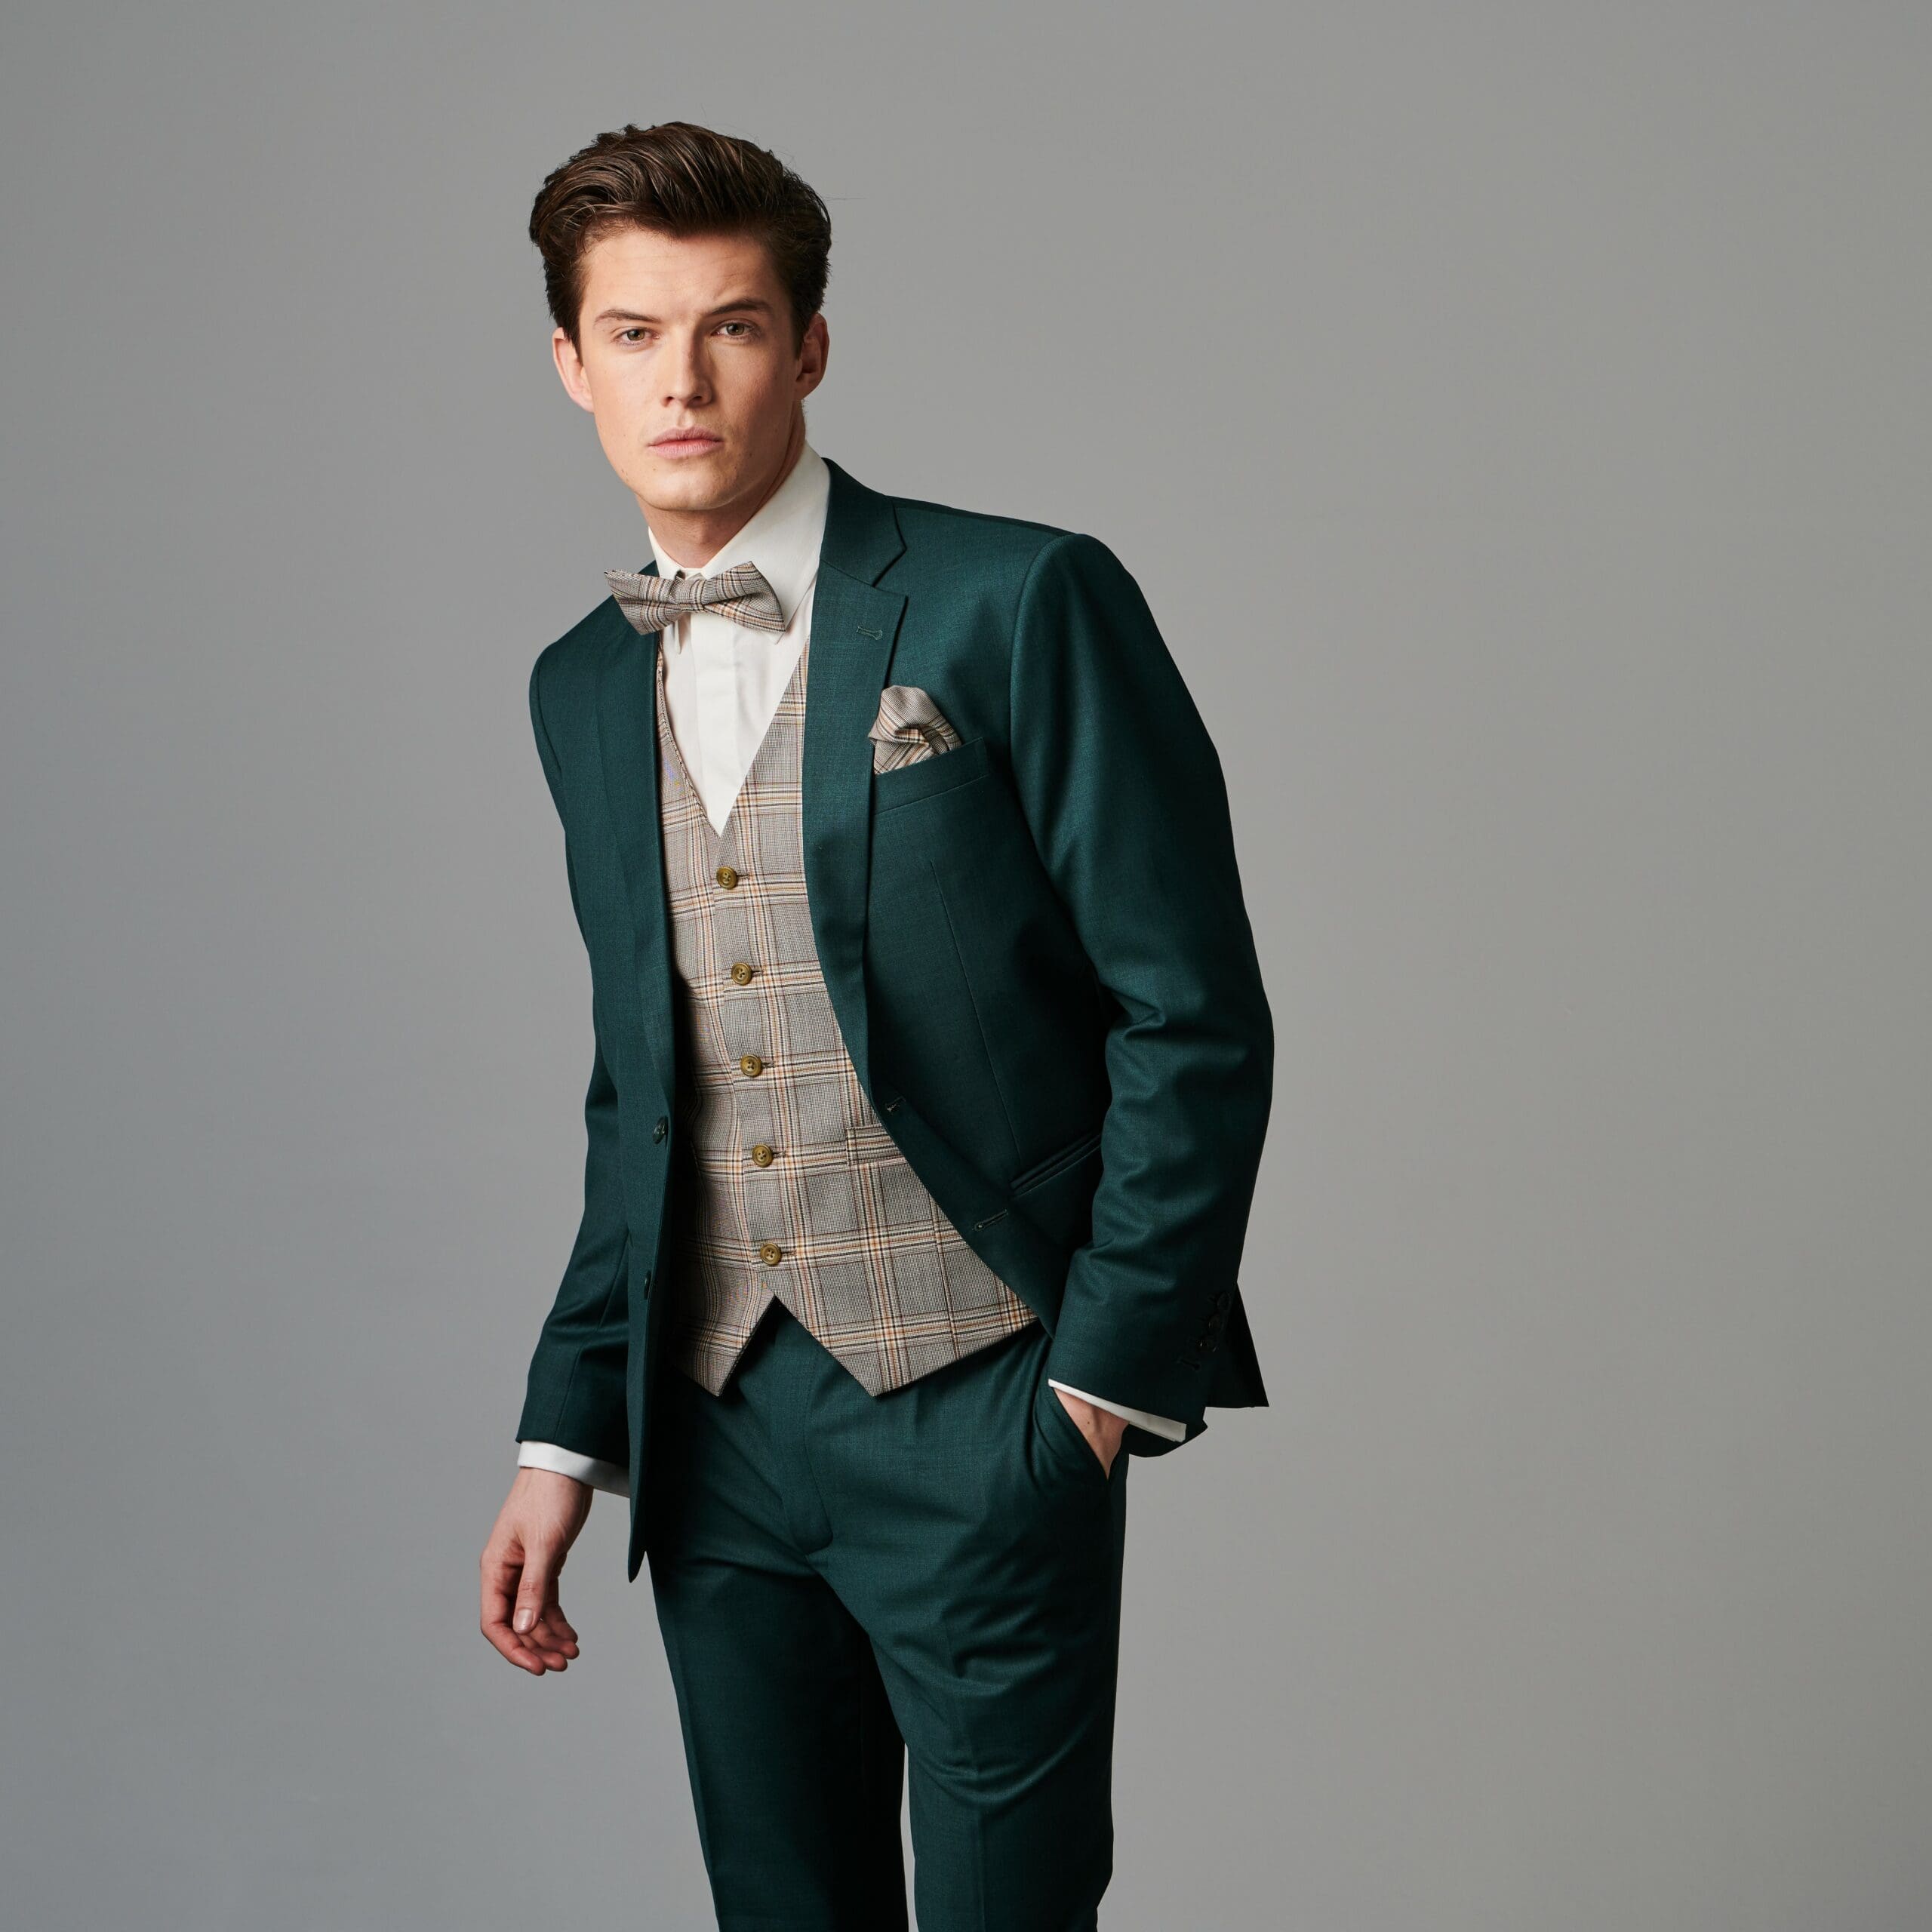 Der grüne Anzug ist ein ungewöhnliches uns stillvolles Kleidungsstück, das sich von den traditionellen Anzügen abhebt.